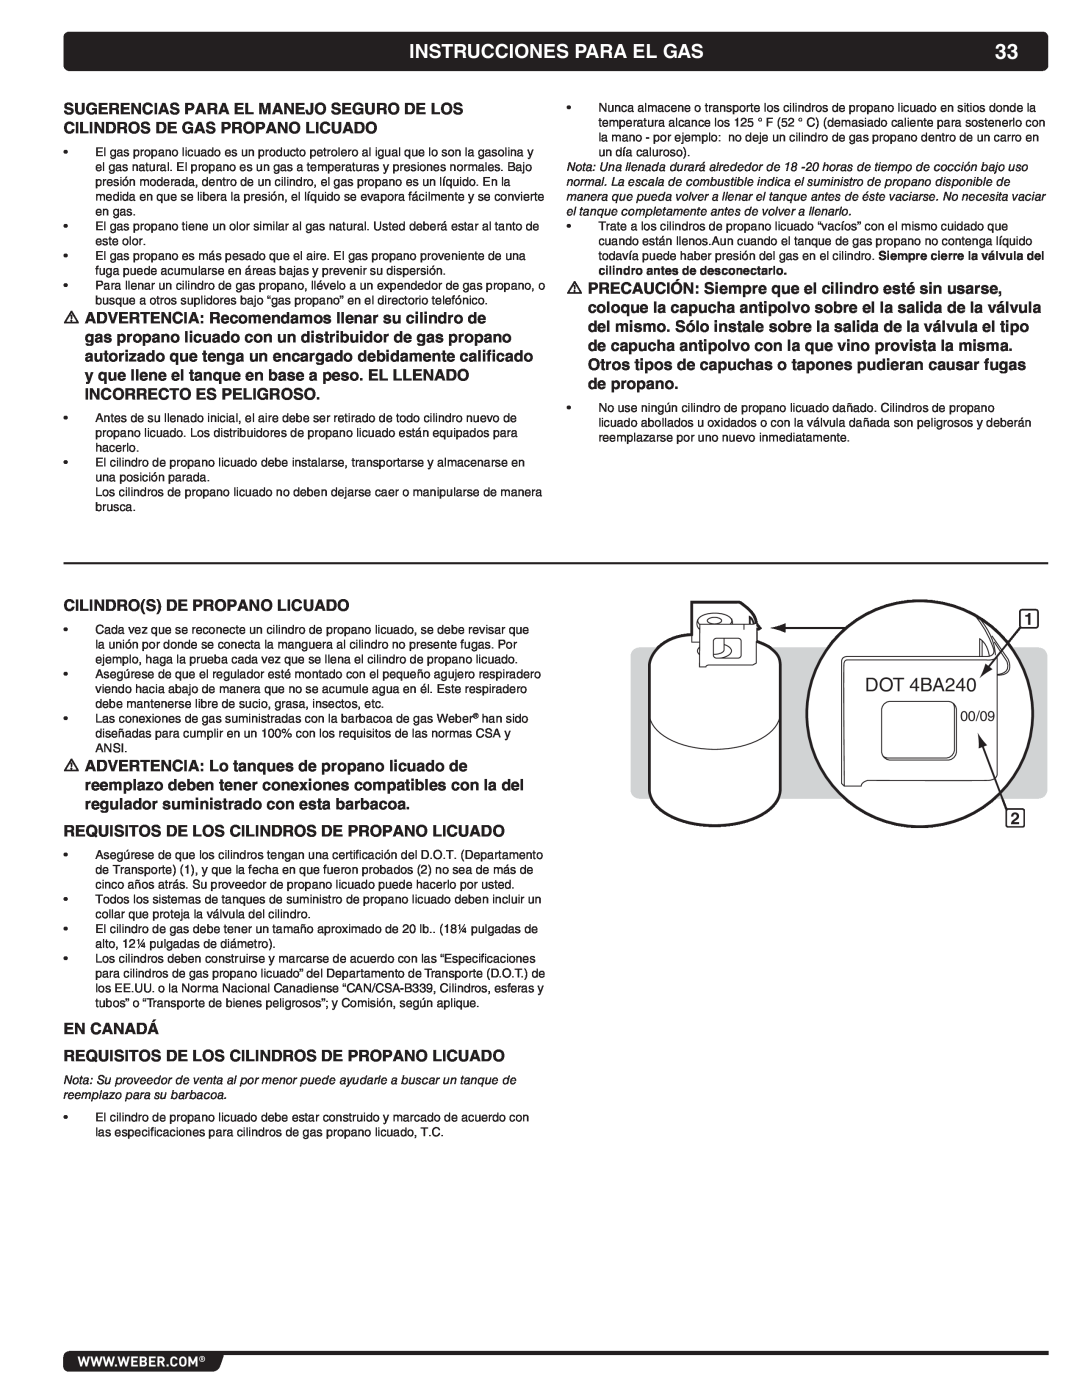 Weber 56069 manual Instrucciones Para El Gas, DOT 4BA240 